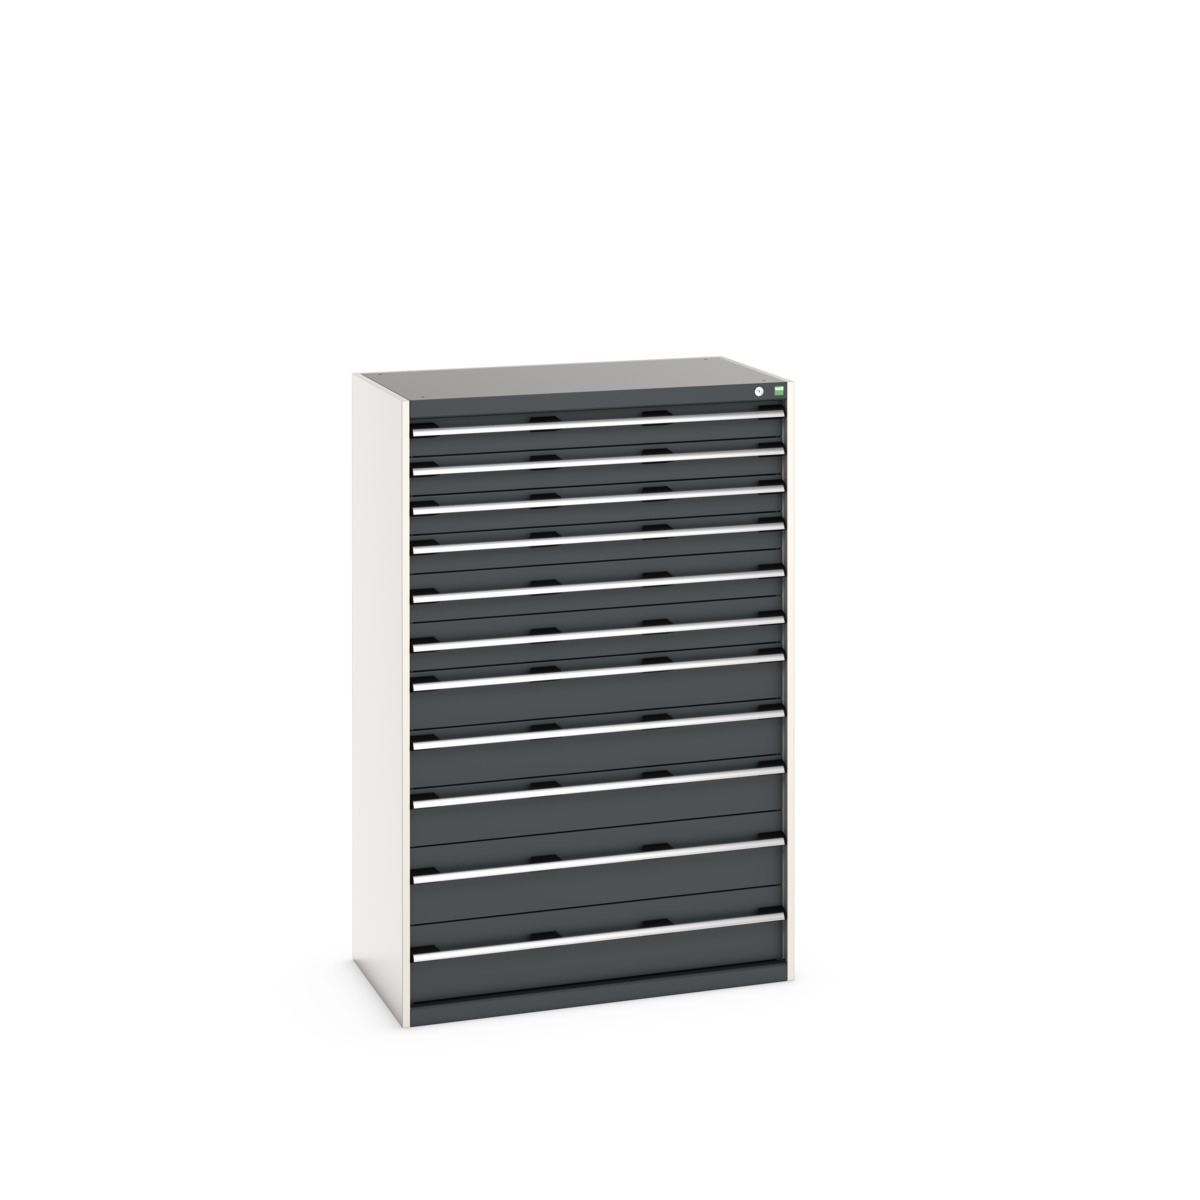 40021046.19V - cubio drawer cabinet